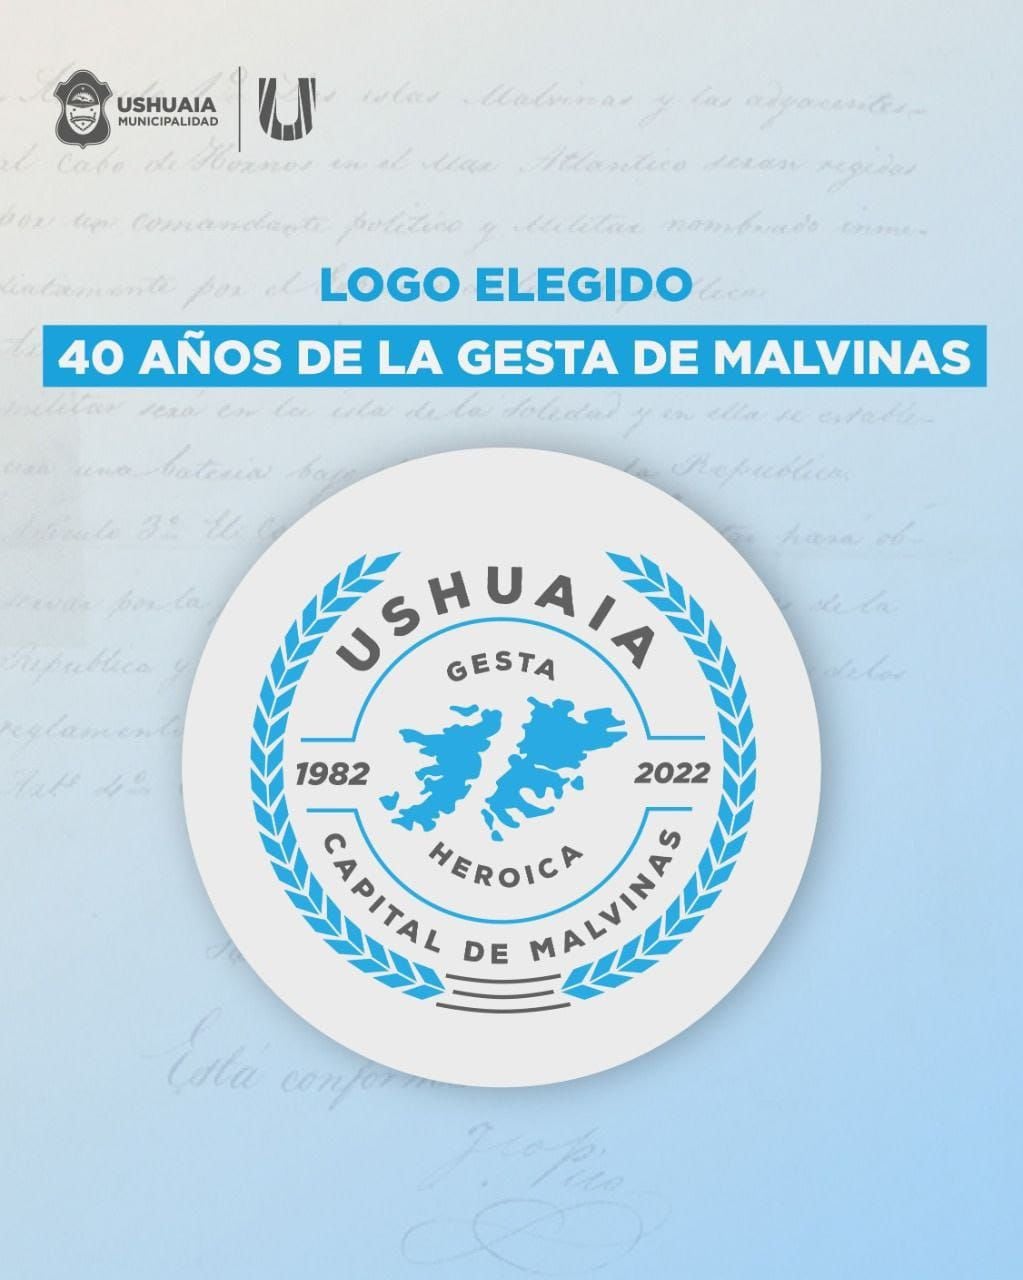 Logo Institucional de la Municipalidad de Ushuaia por los 40 años de la Gesta de Malvinas.